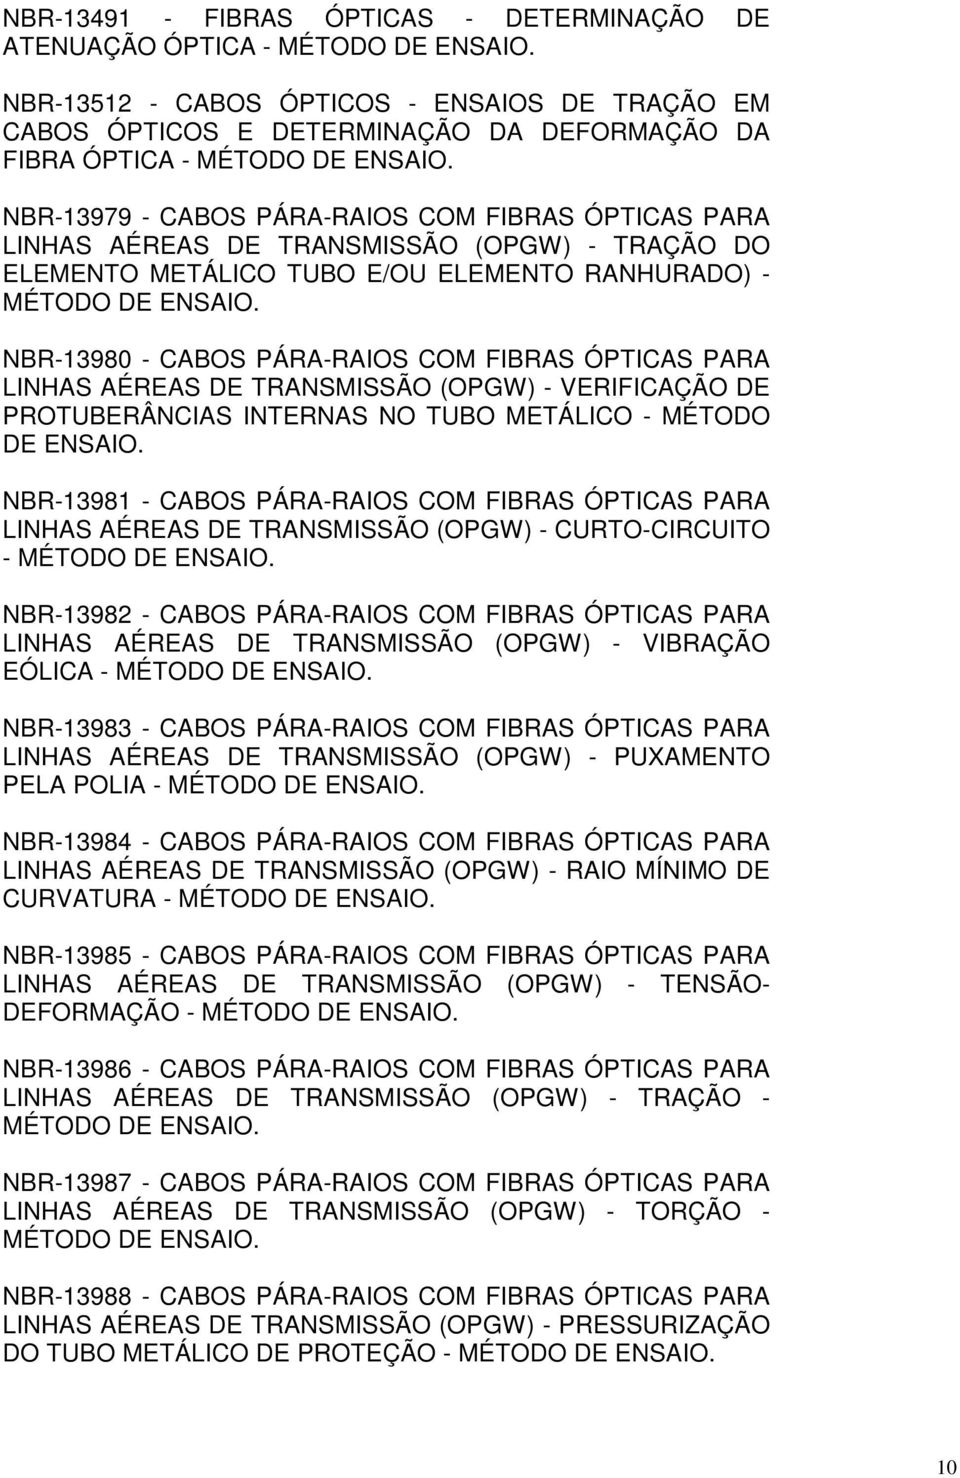 NBR-13979 - CABOS PÁRA-RAIOS COM FIBRAS ÓPTICAS PARA LINHAS AÉREAS DE TRANSMISSÃO (OPGW) - TRAÇÃO DO ELEMENTO METÁLICO TUBO E/OU ELEMENTO RANHURADO) - MÉTODO DE ENSAIO.